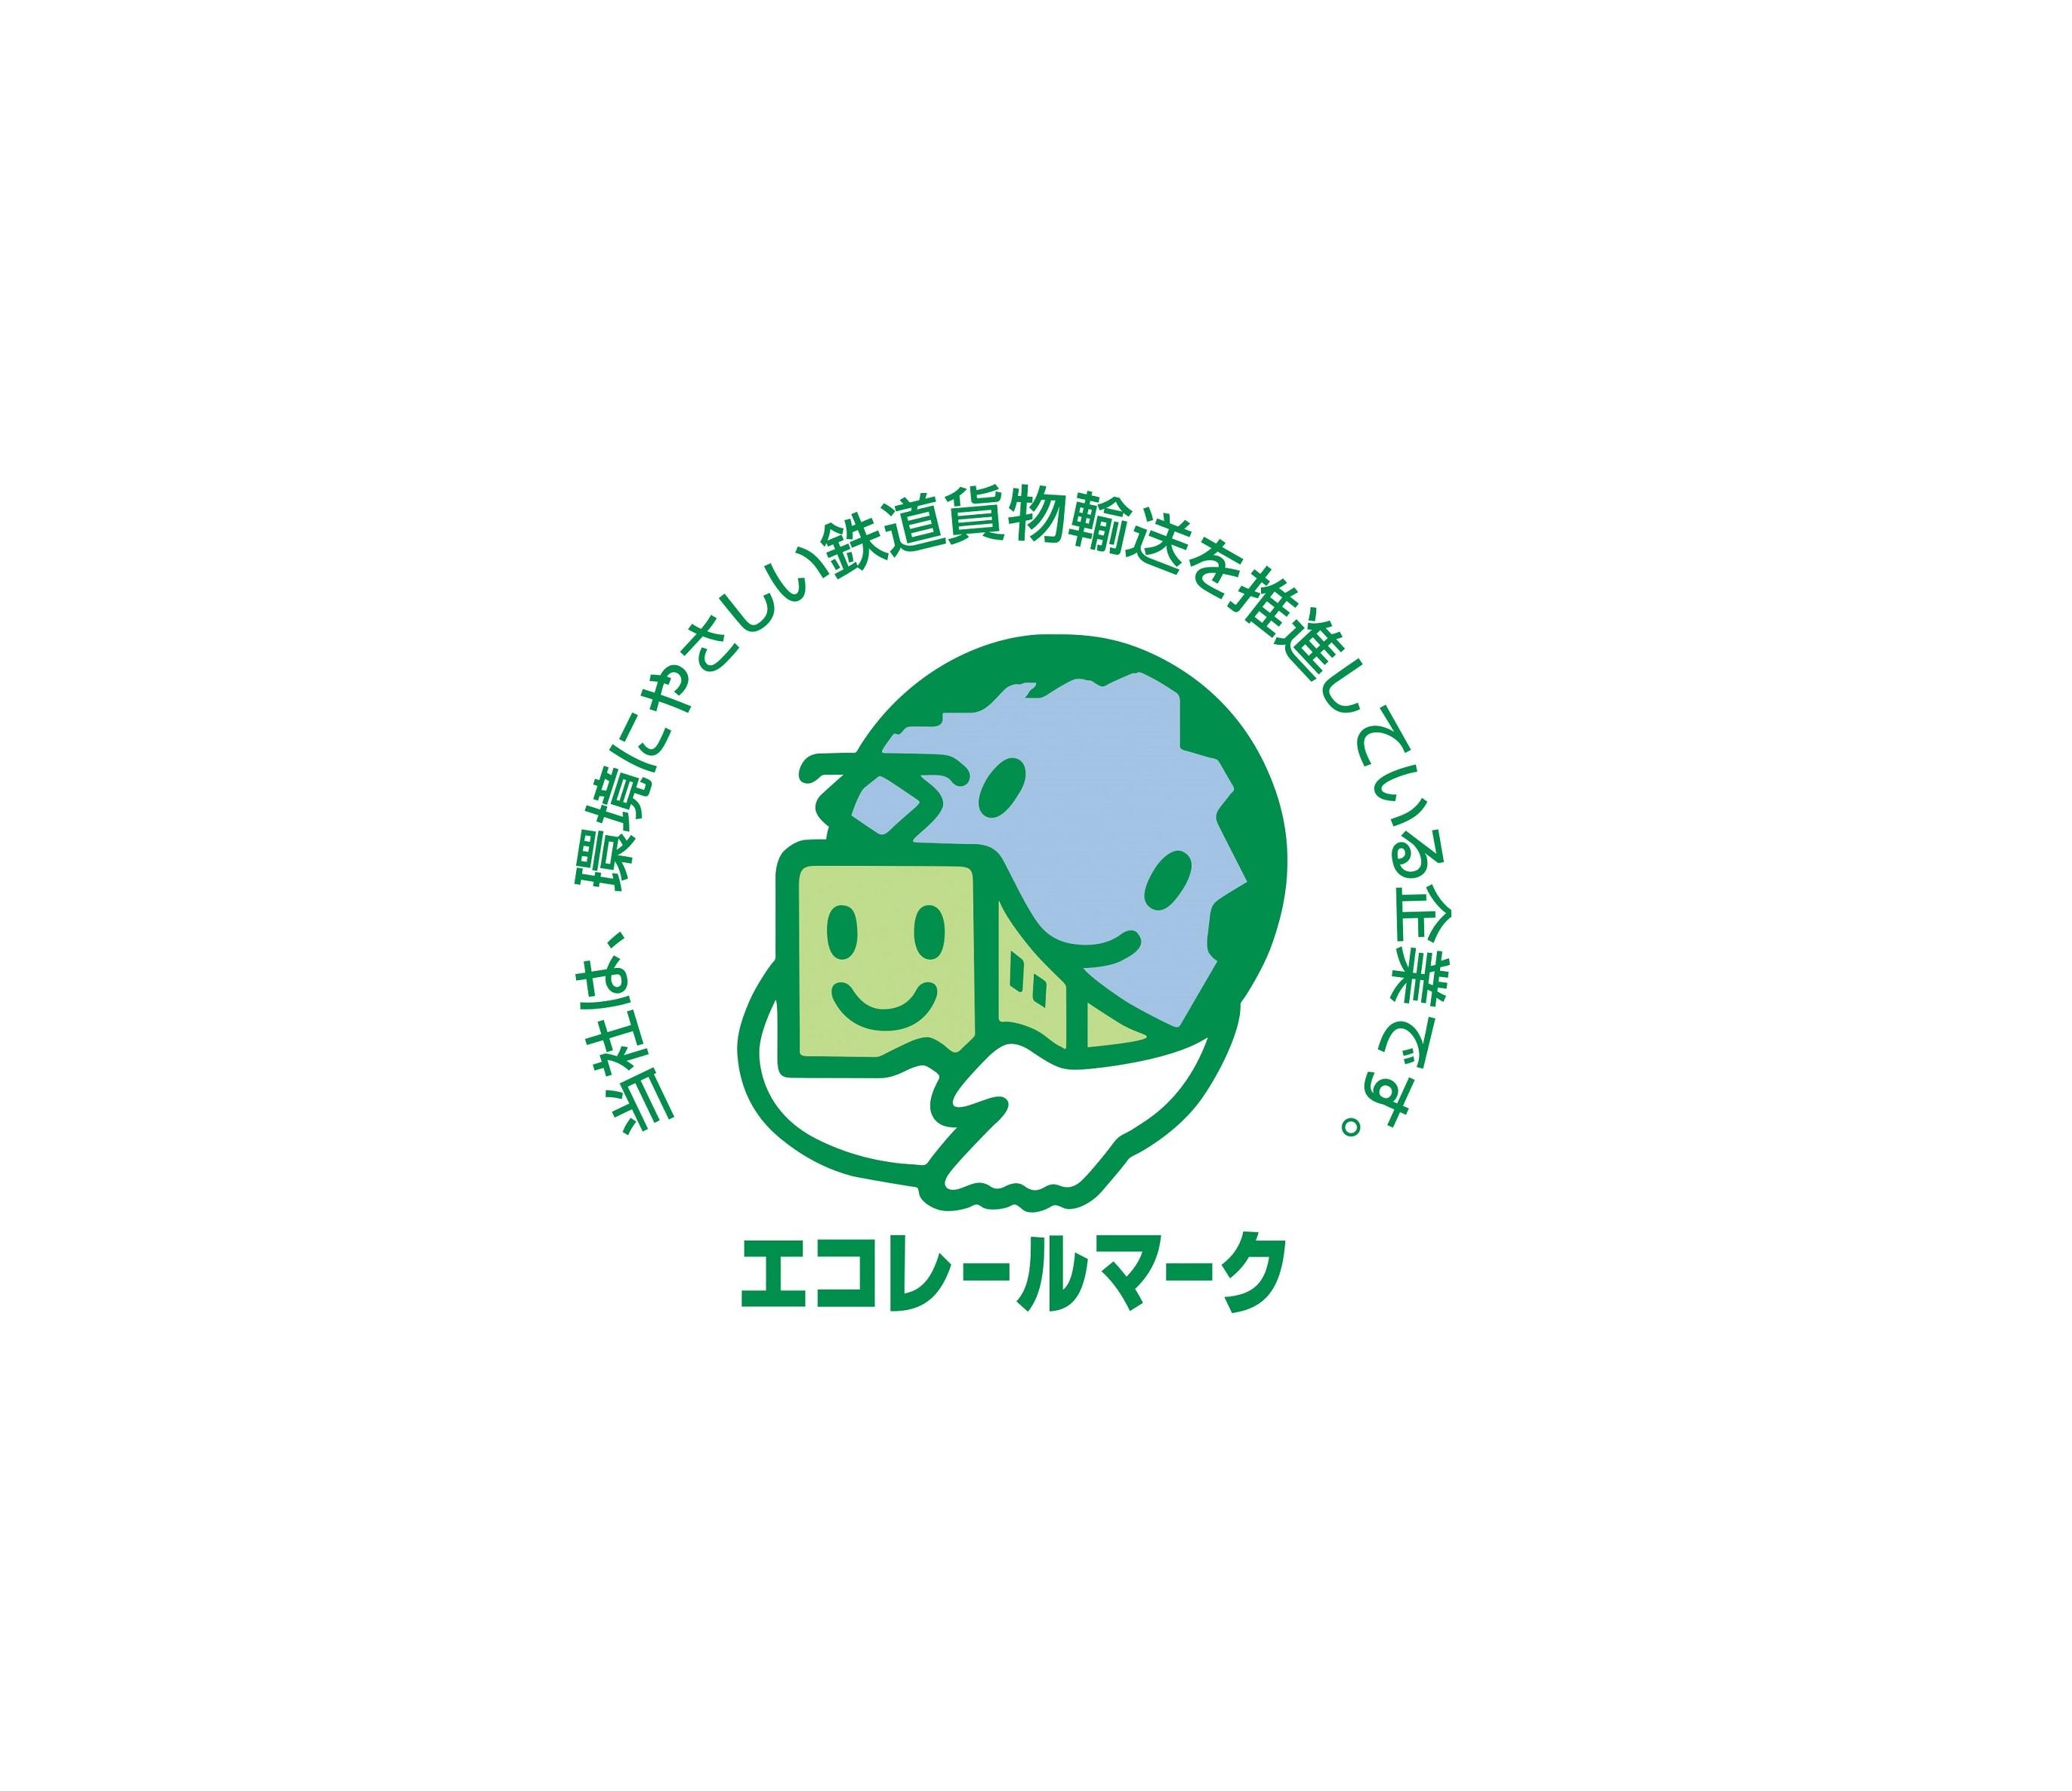 名古屋工場が エコレールマーク 認定を取得 ニュース 日東工業株式会社